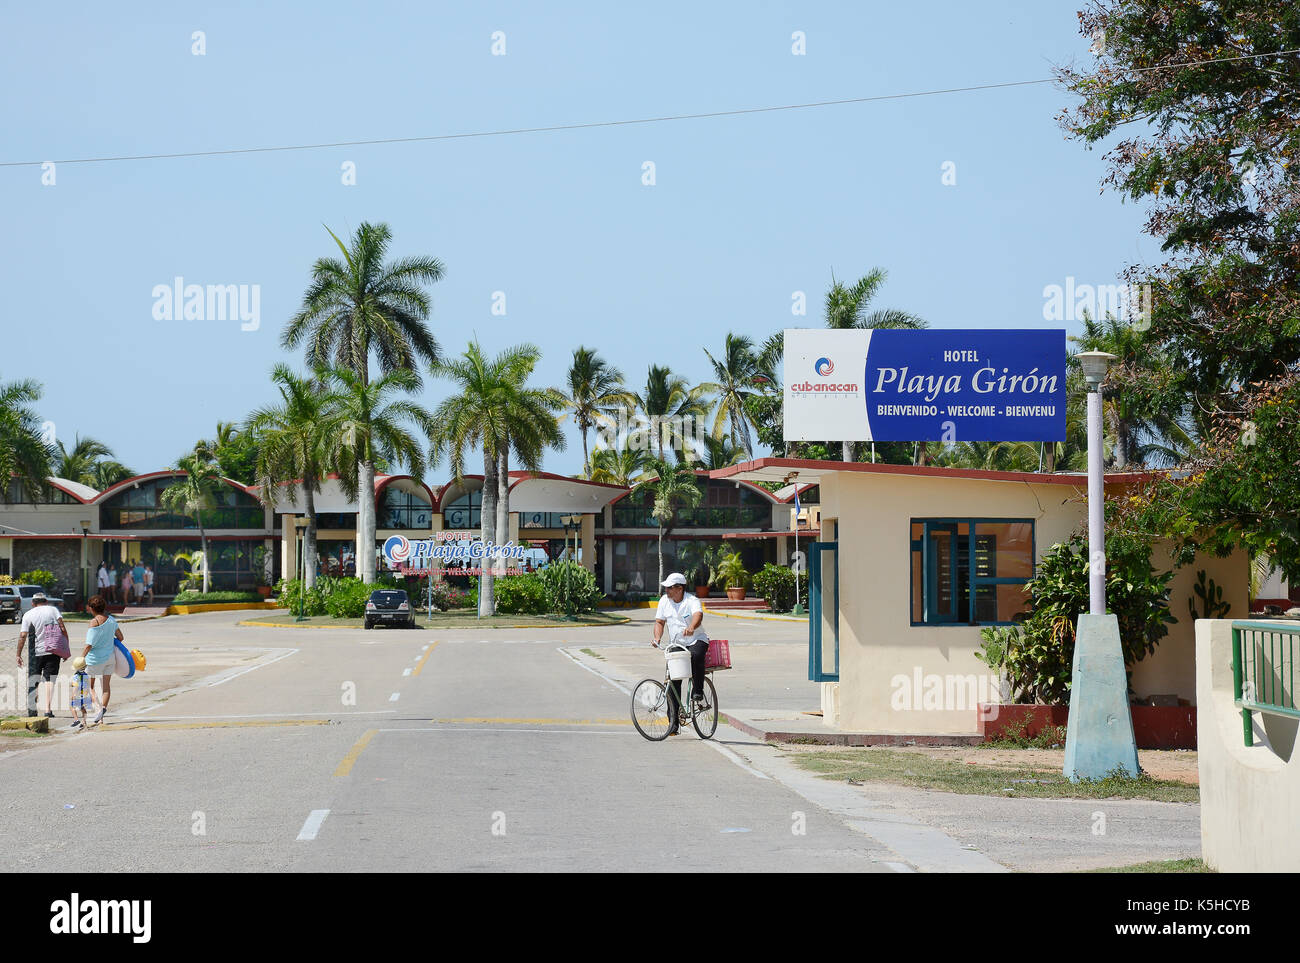 PLAYA GIRON, Kuba - Juli 24, 2016: Bucht von Schweinen Hotel. Playa Pesquero ist ein beliebtes Ziel für Taucher und Schnorchler. Stockfoto